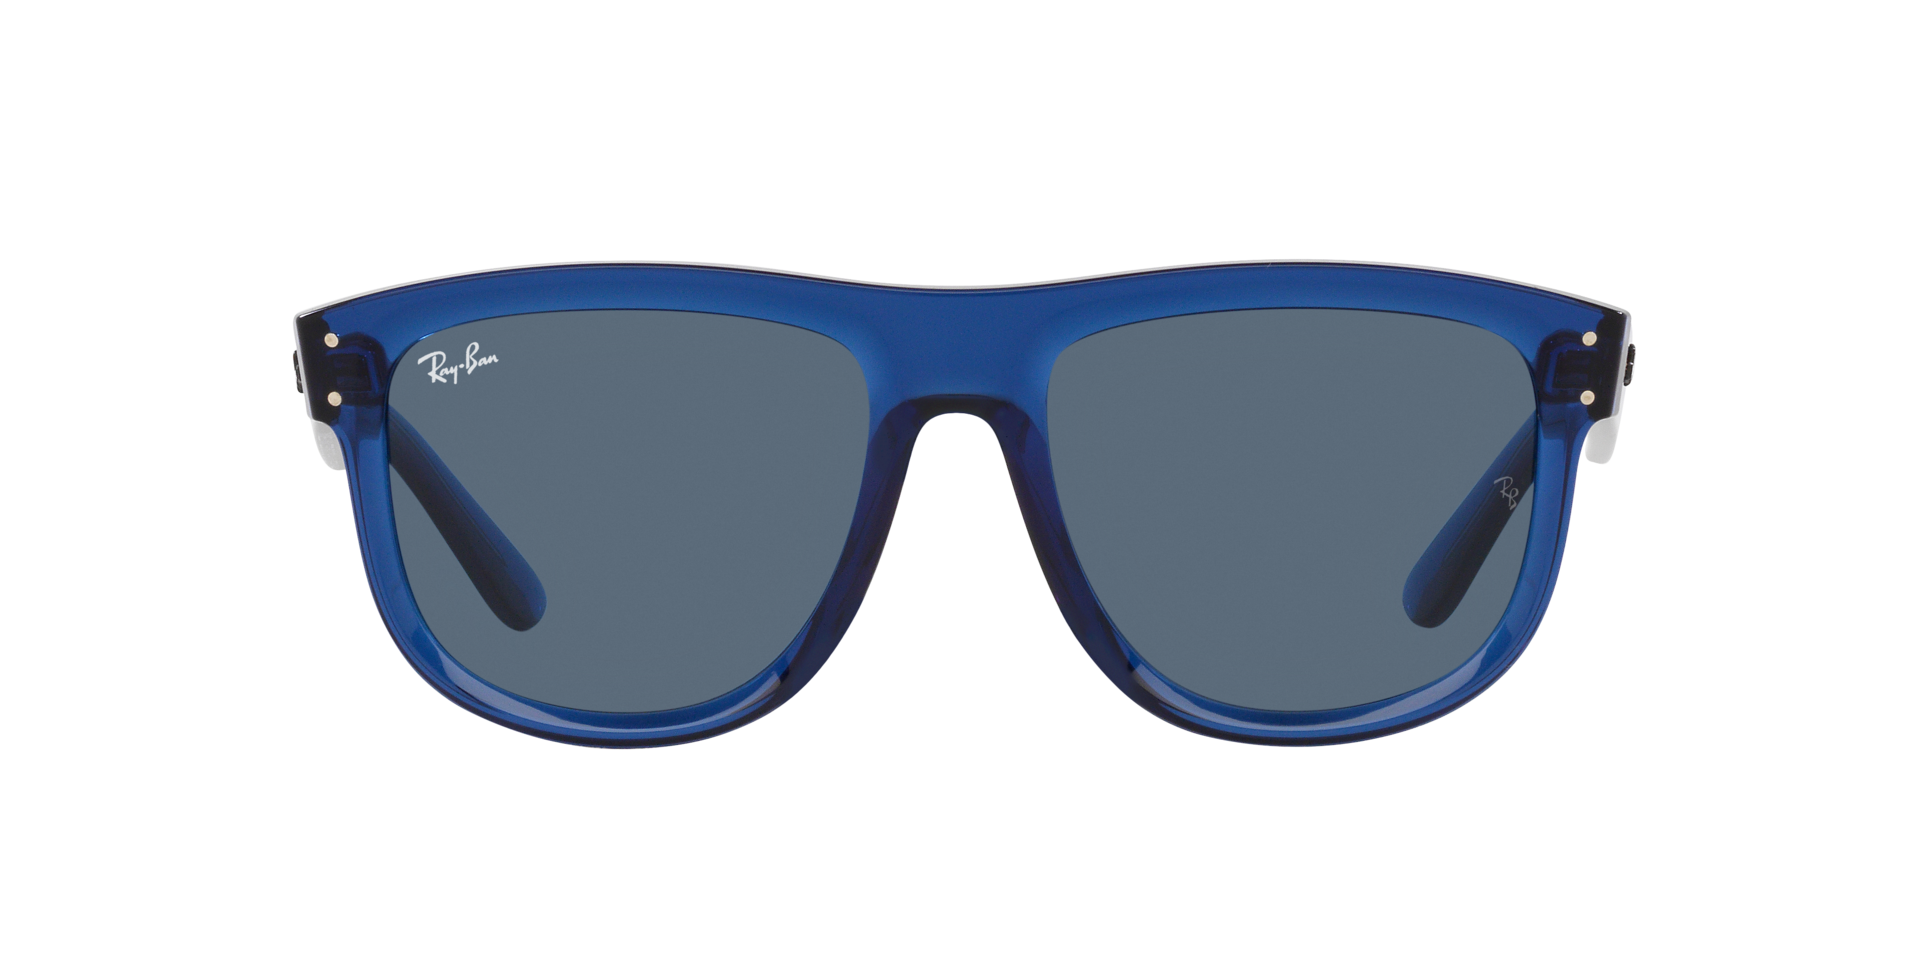 Das Bild zeigt die Sonnenbrille RBR0501S 67083A von der  Marke Ray Ban in dunkelblau transparent